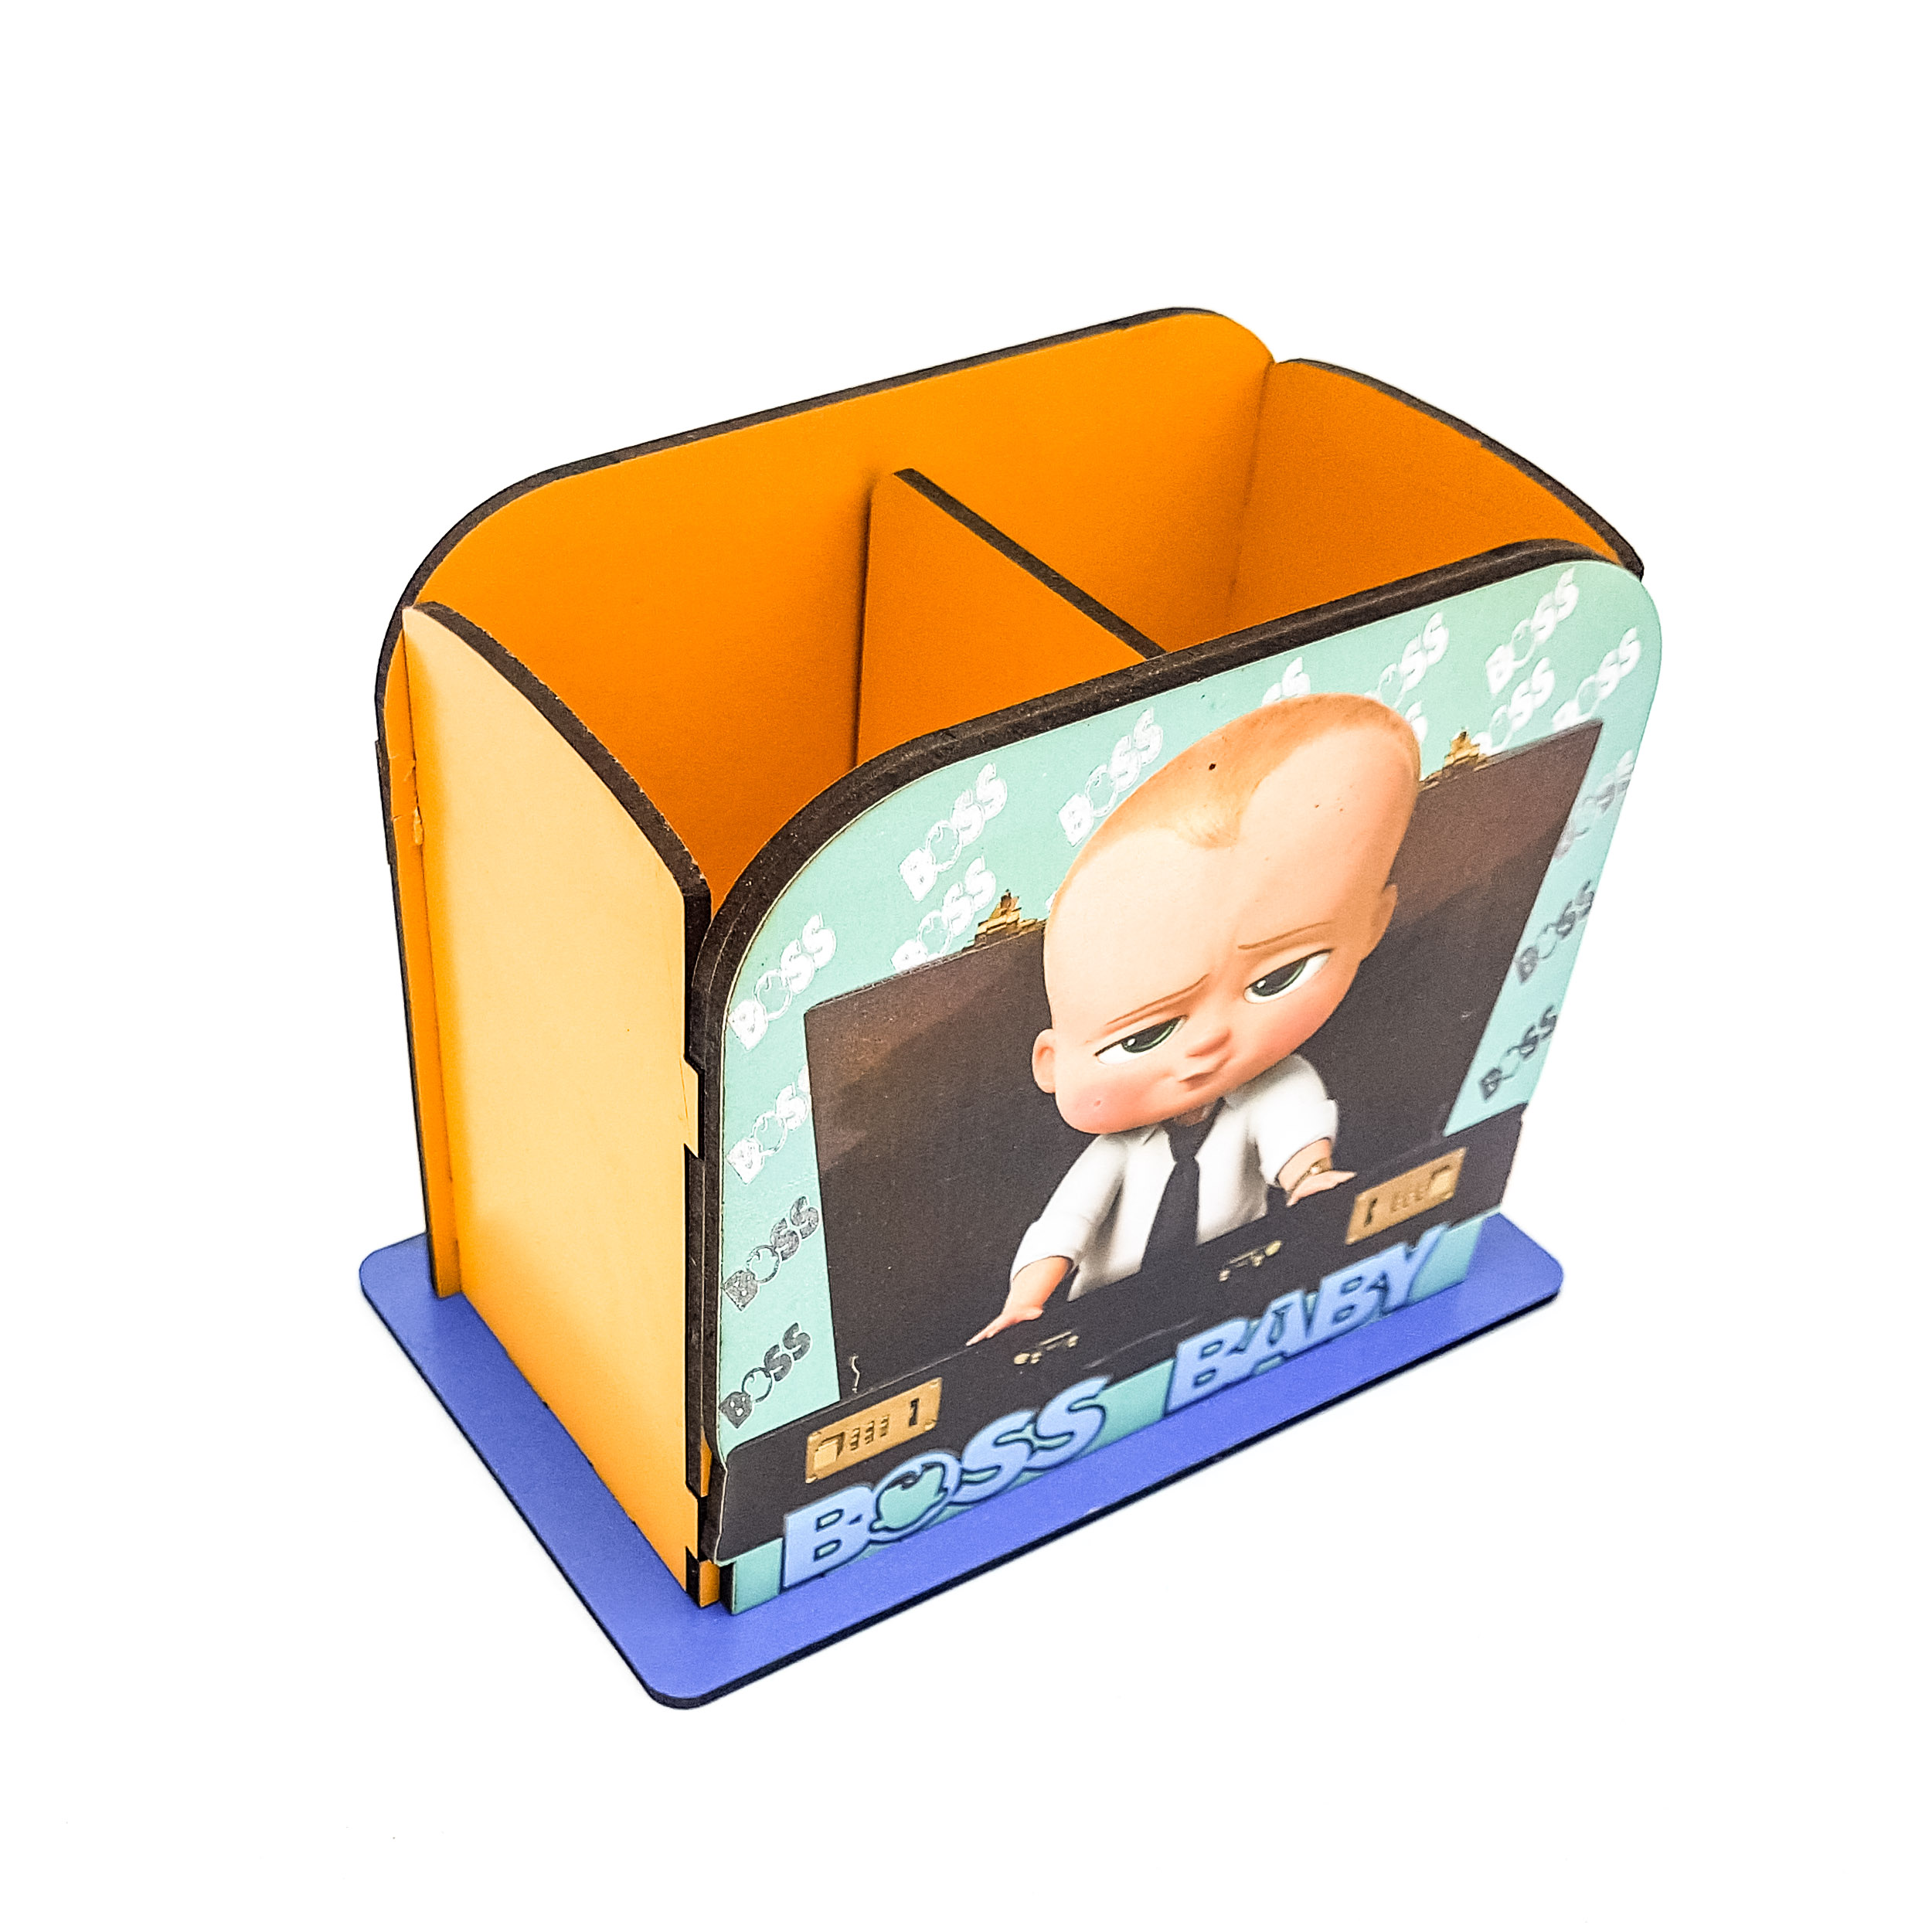 جامدادی رومیزی مدل بچه رییس کد 3141